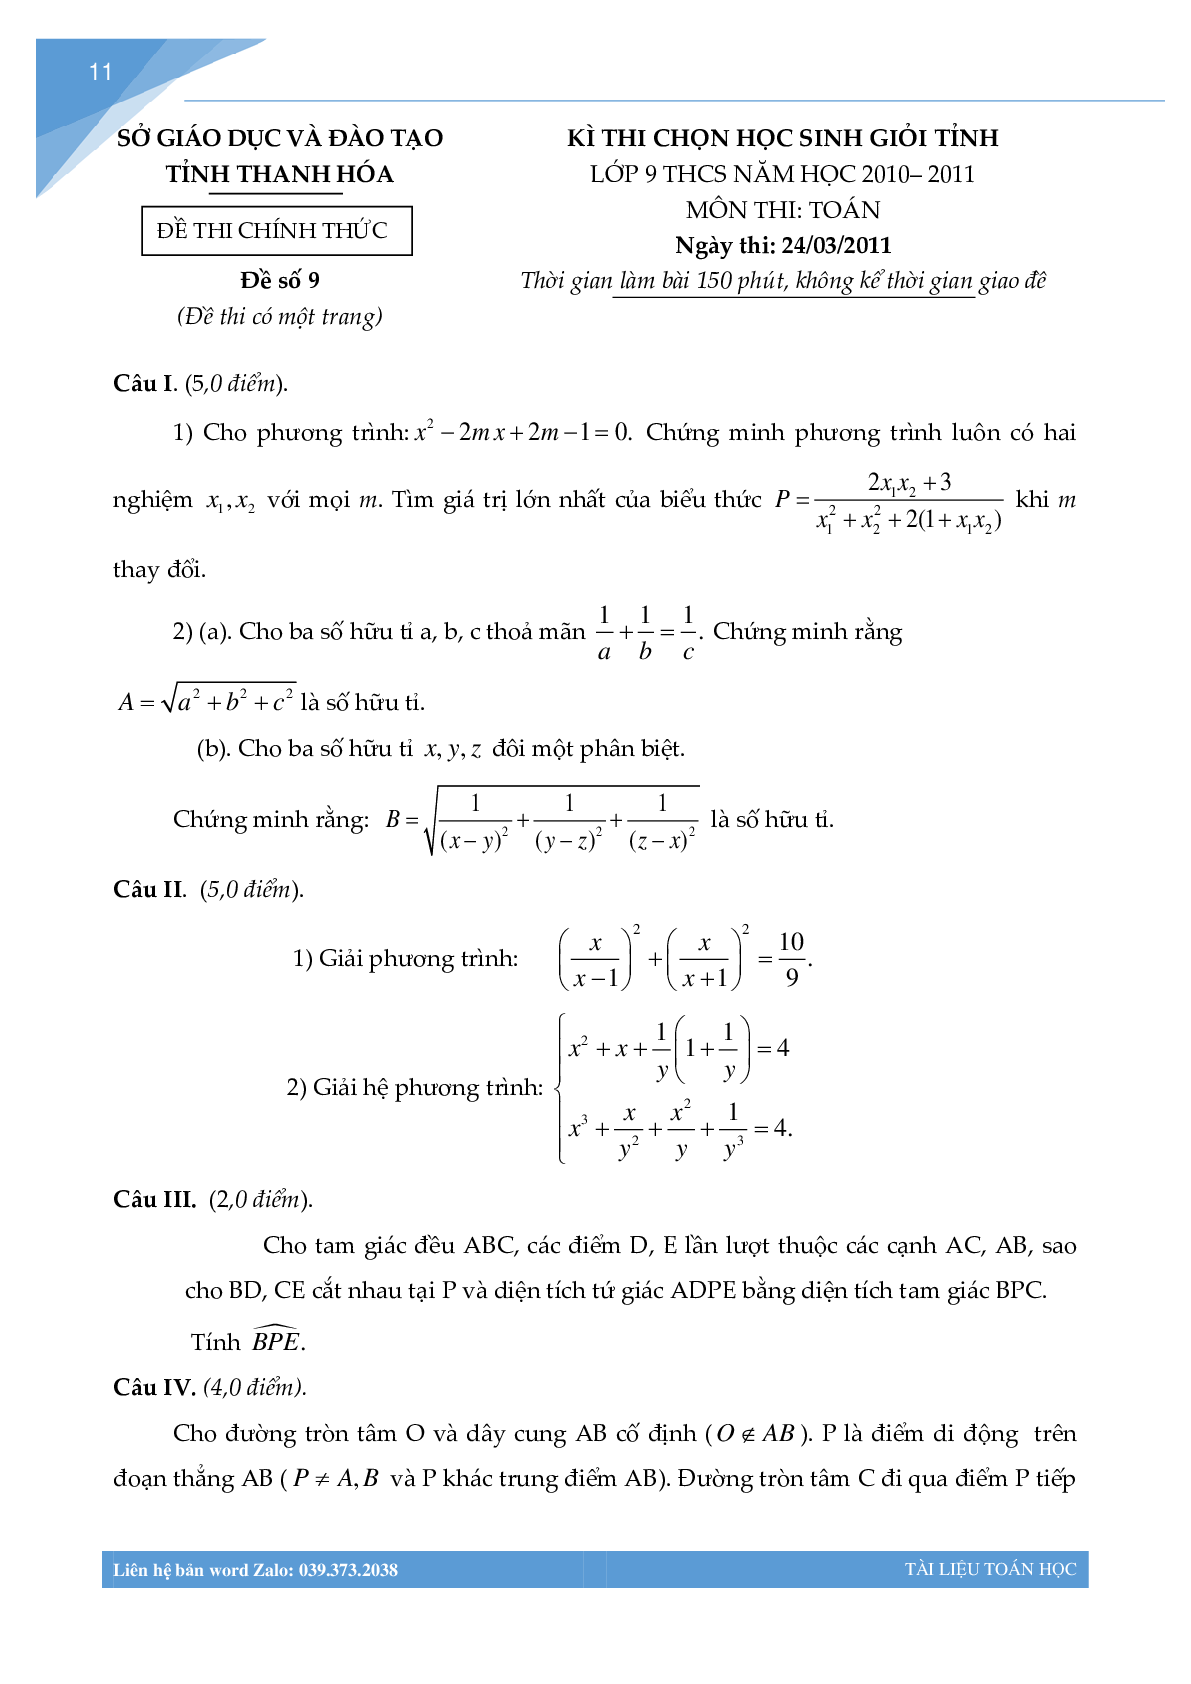 Bộ đề học sinh giỏi môn toán lớp 9 tỉnh Thanh Hóa (trang 10)